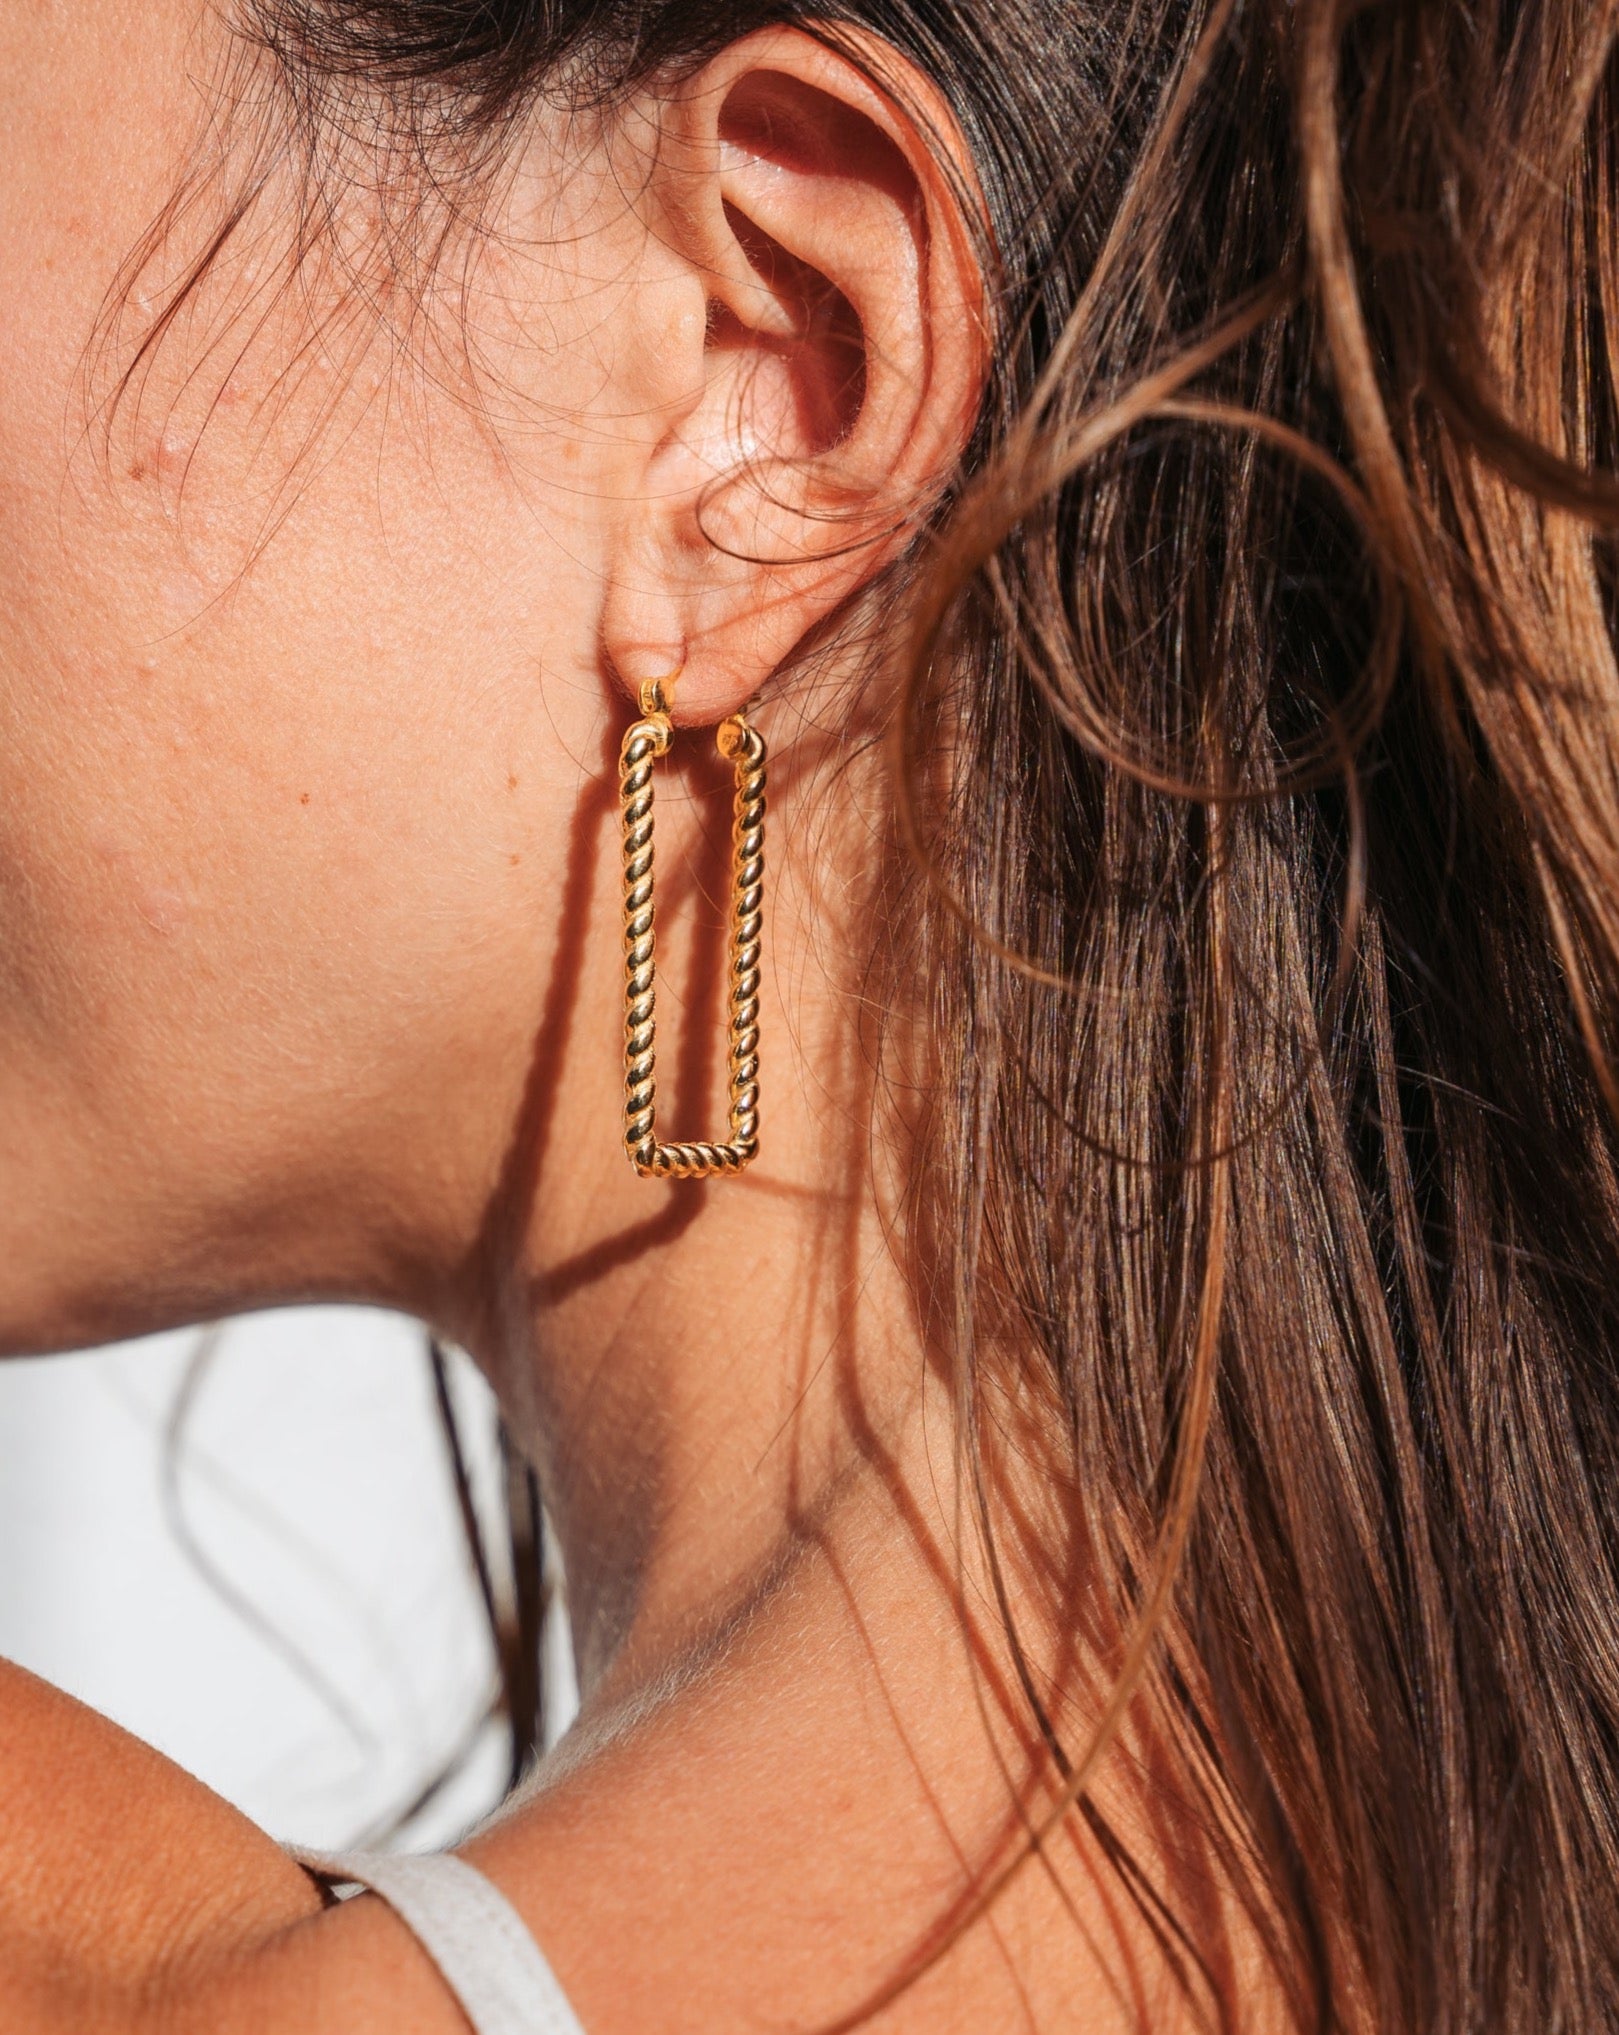 Große goldene Ohrringe | Eckige Creolen | Eingedrehte Ohrringe | Handgemachter Schmuck aus Bali | Fair und umweltschonend | VERLAN Jewellery